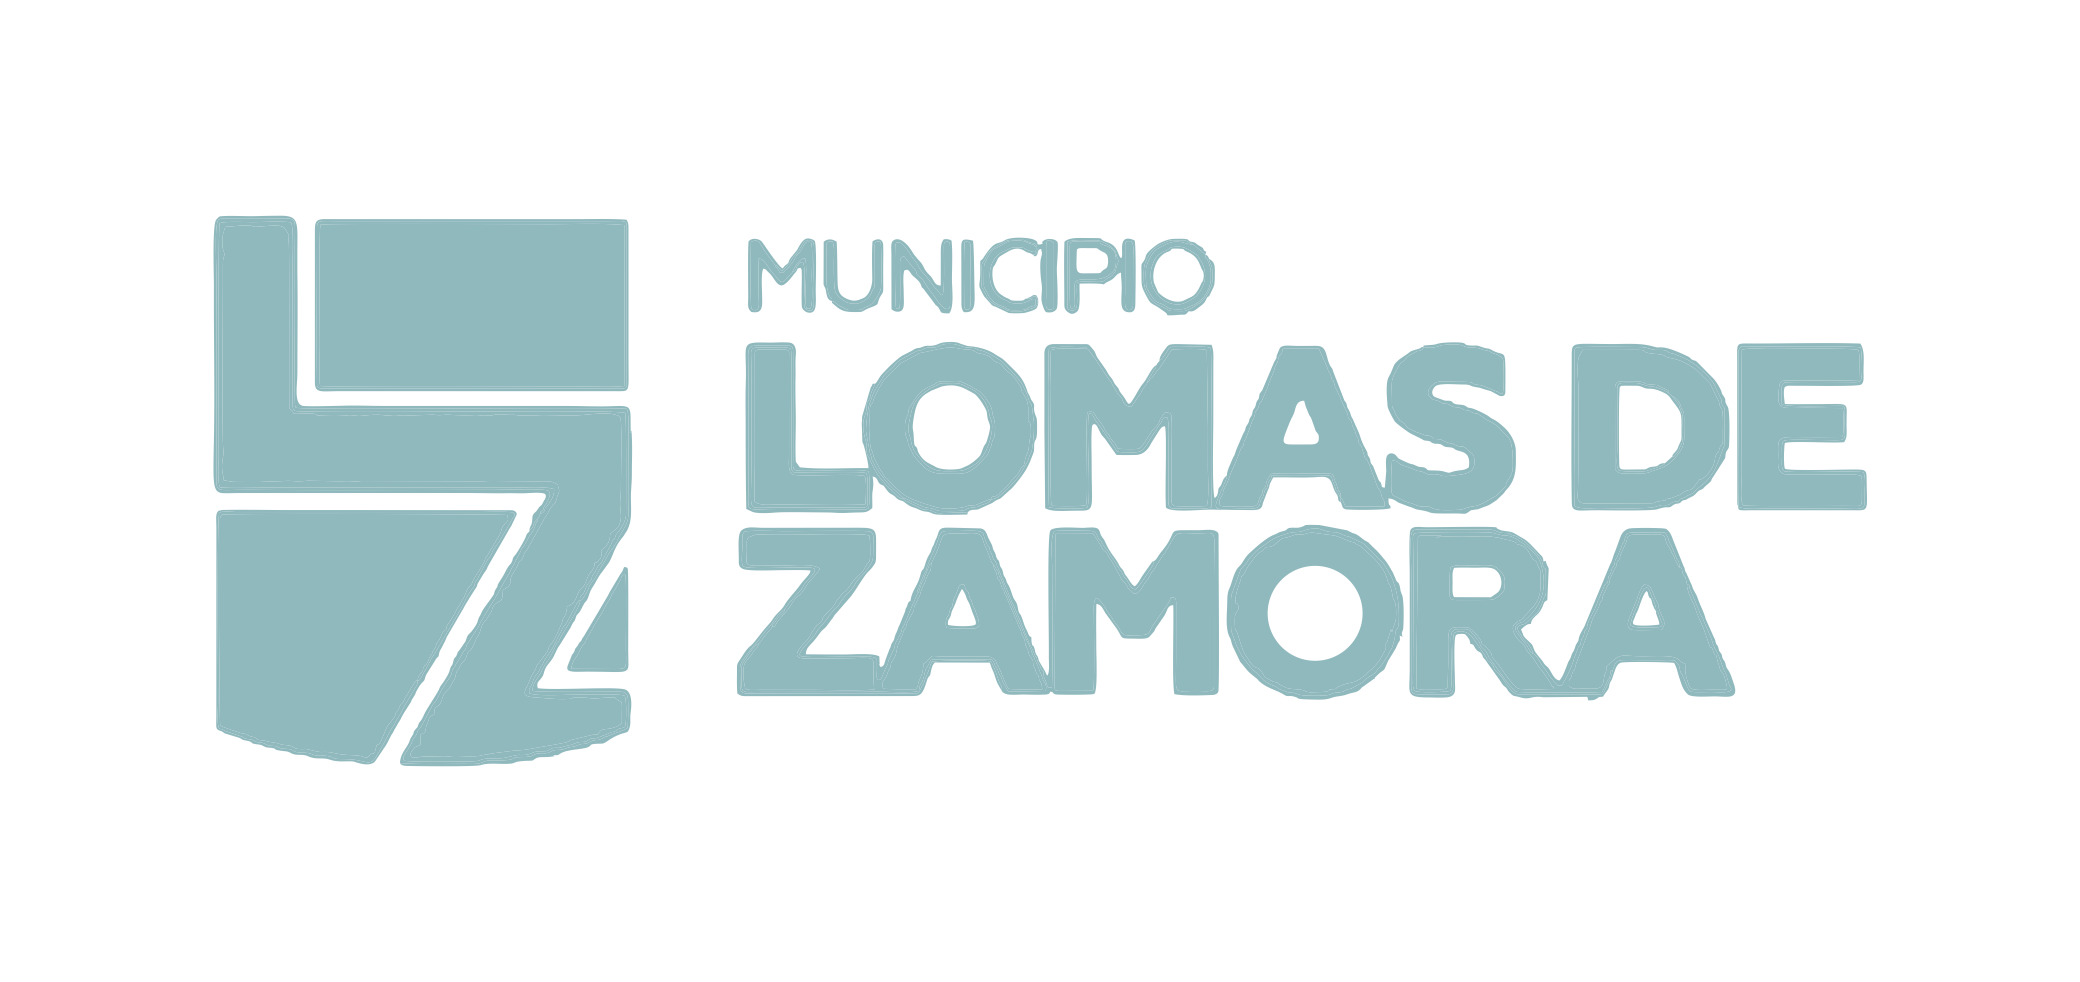 LOMAS DE ZAMORA